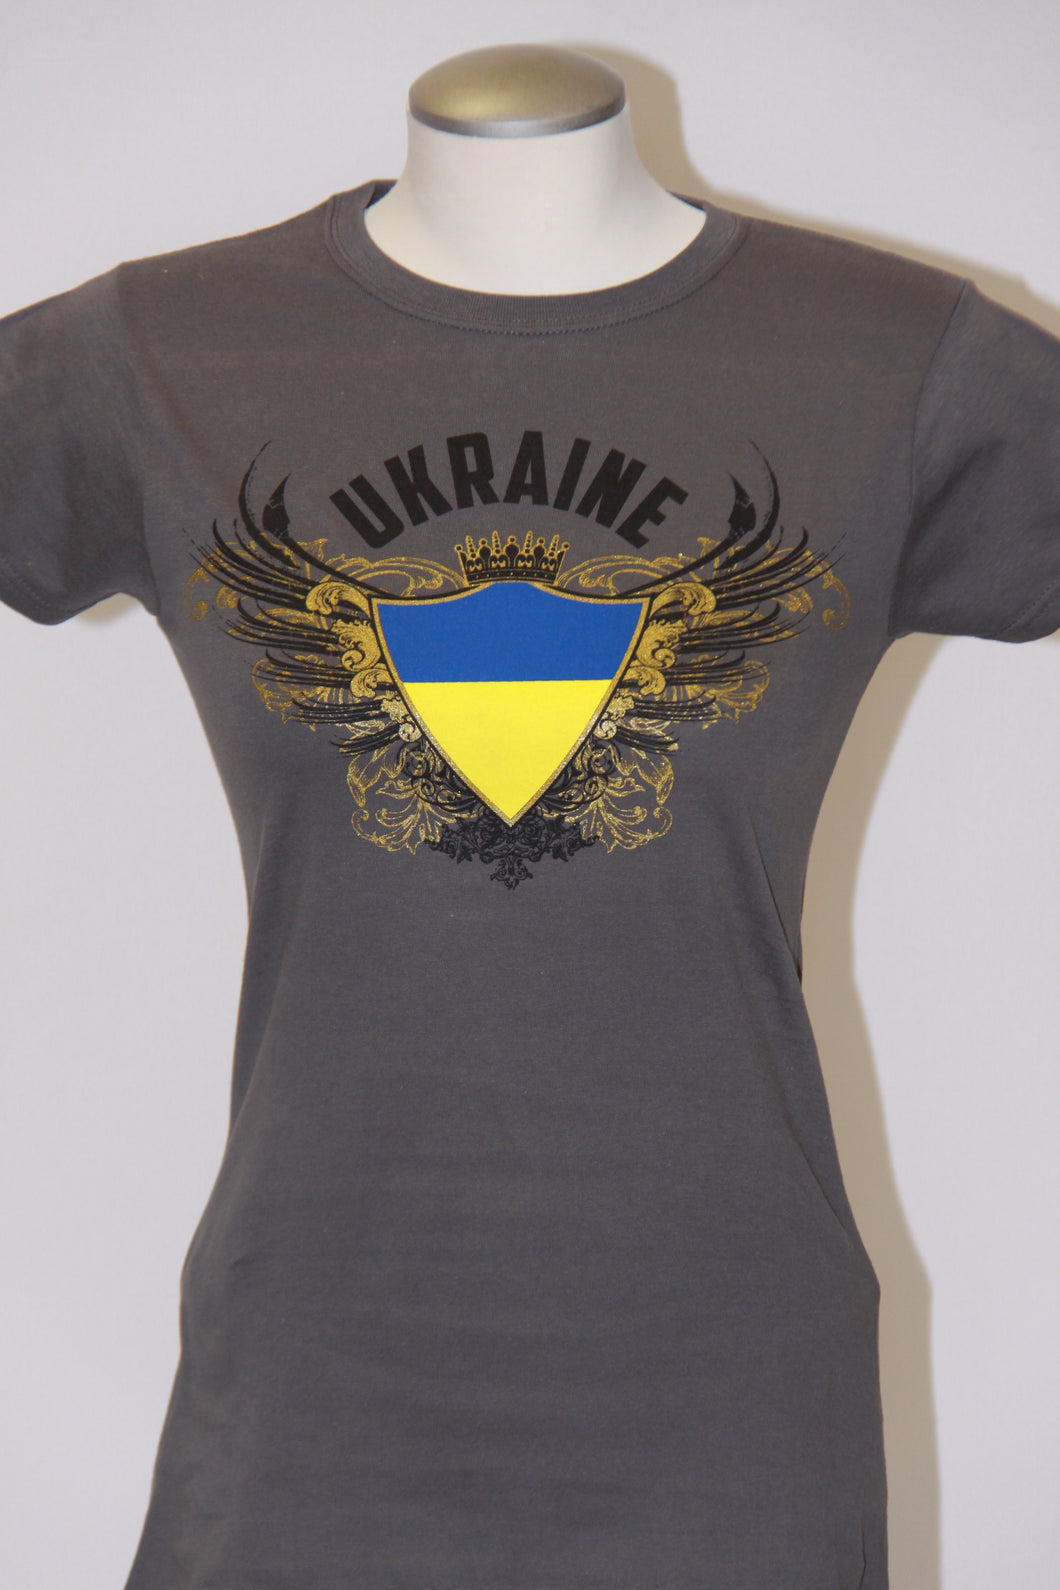 Ladies Junior Fit Ukraine Coat of Arms- Charcoal